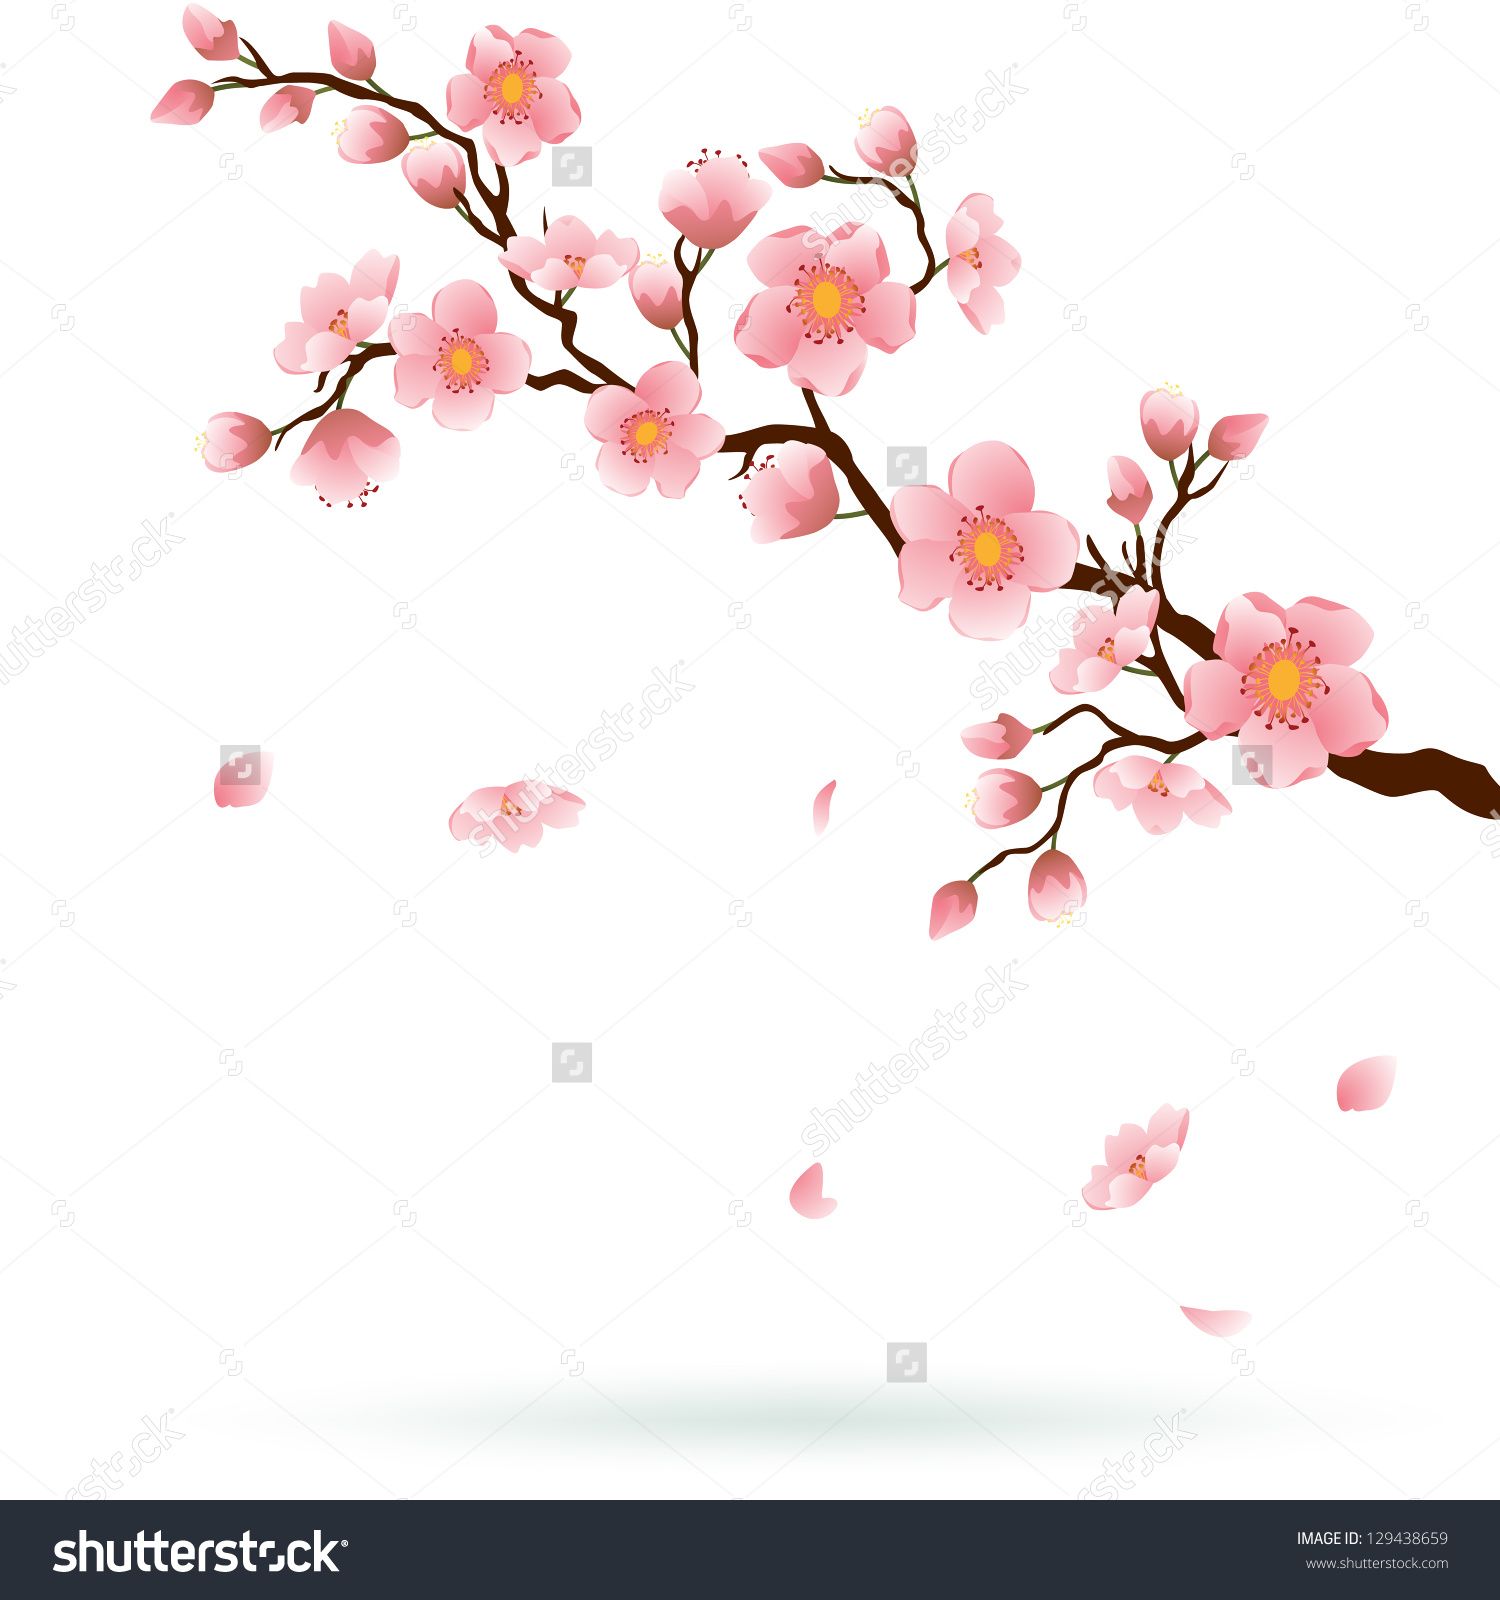 Blossom Tree Stock Vectors & Vector Clip Art | Shutterstock ...